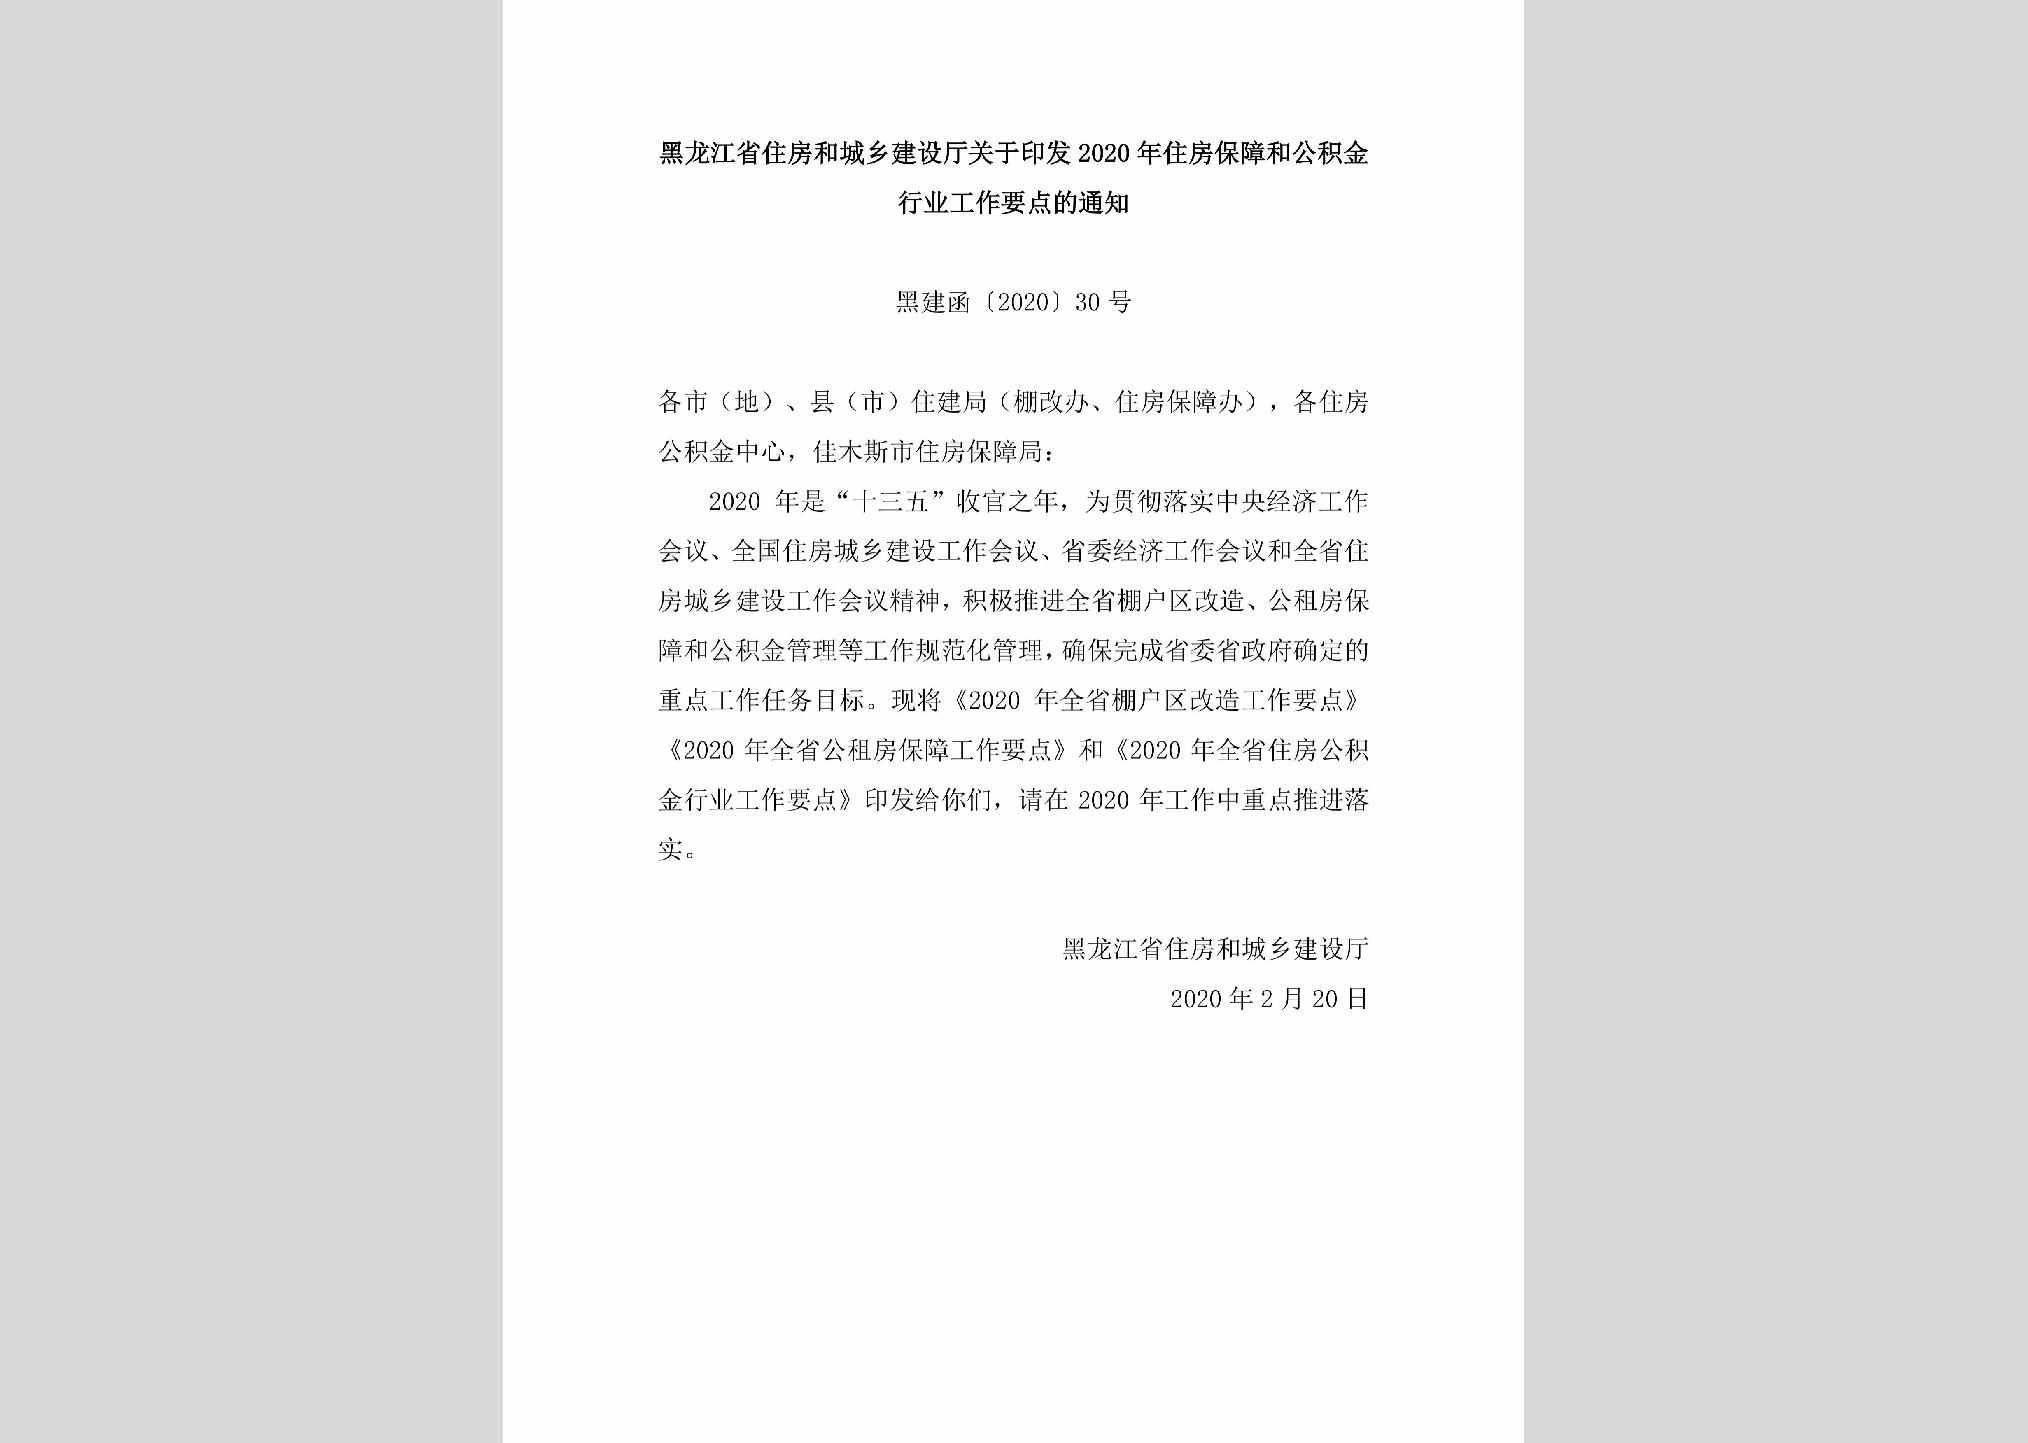 黑建函[2020]30号：黑龙江省住房和城乡建设厅关于印发2020年住房保障和公积金行业工作要点的通知